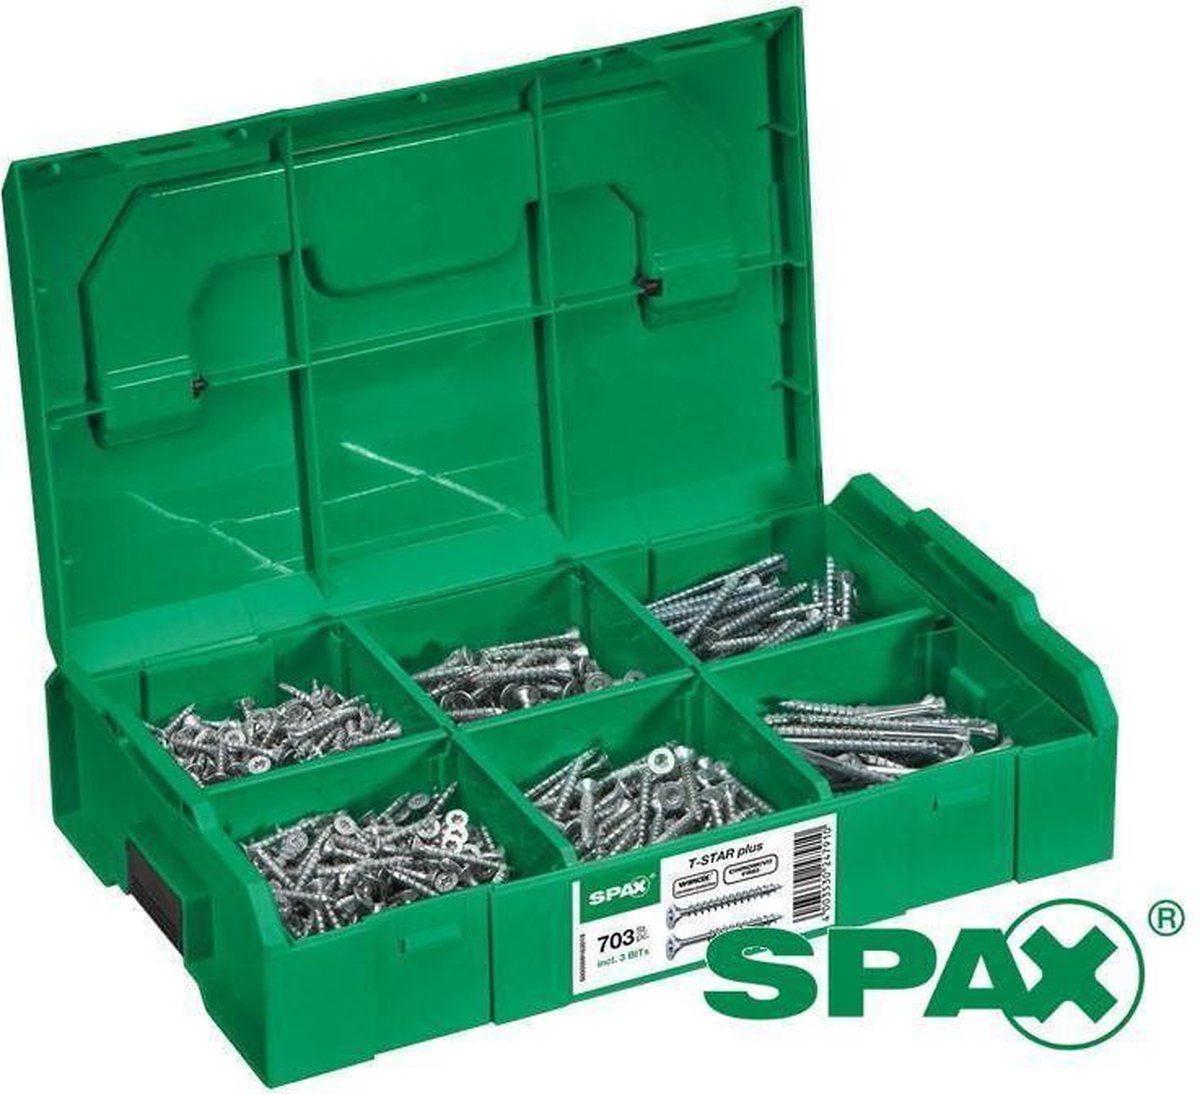 SPAX assortimentsbox schroeven platkop kleine maten 703 stuks - Spax